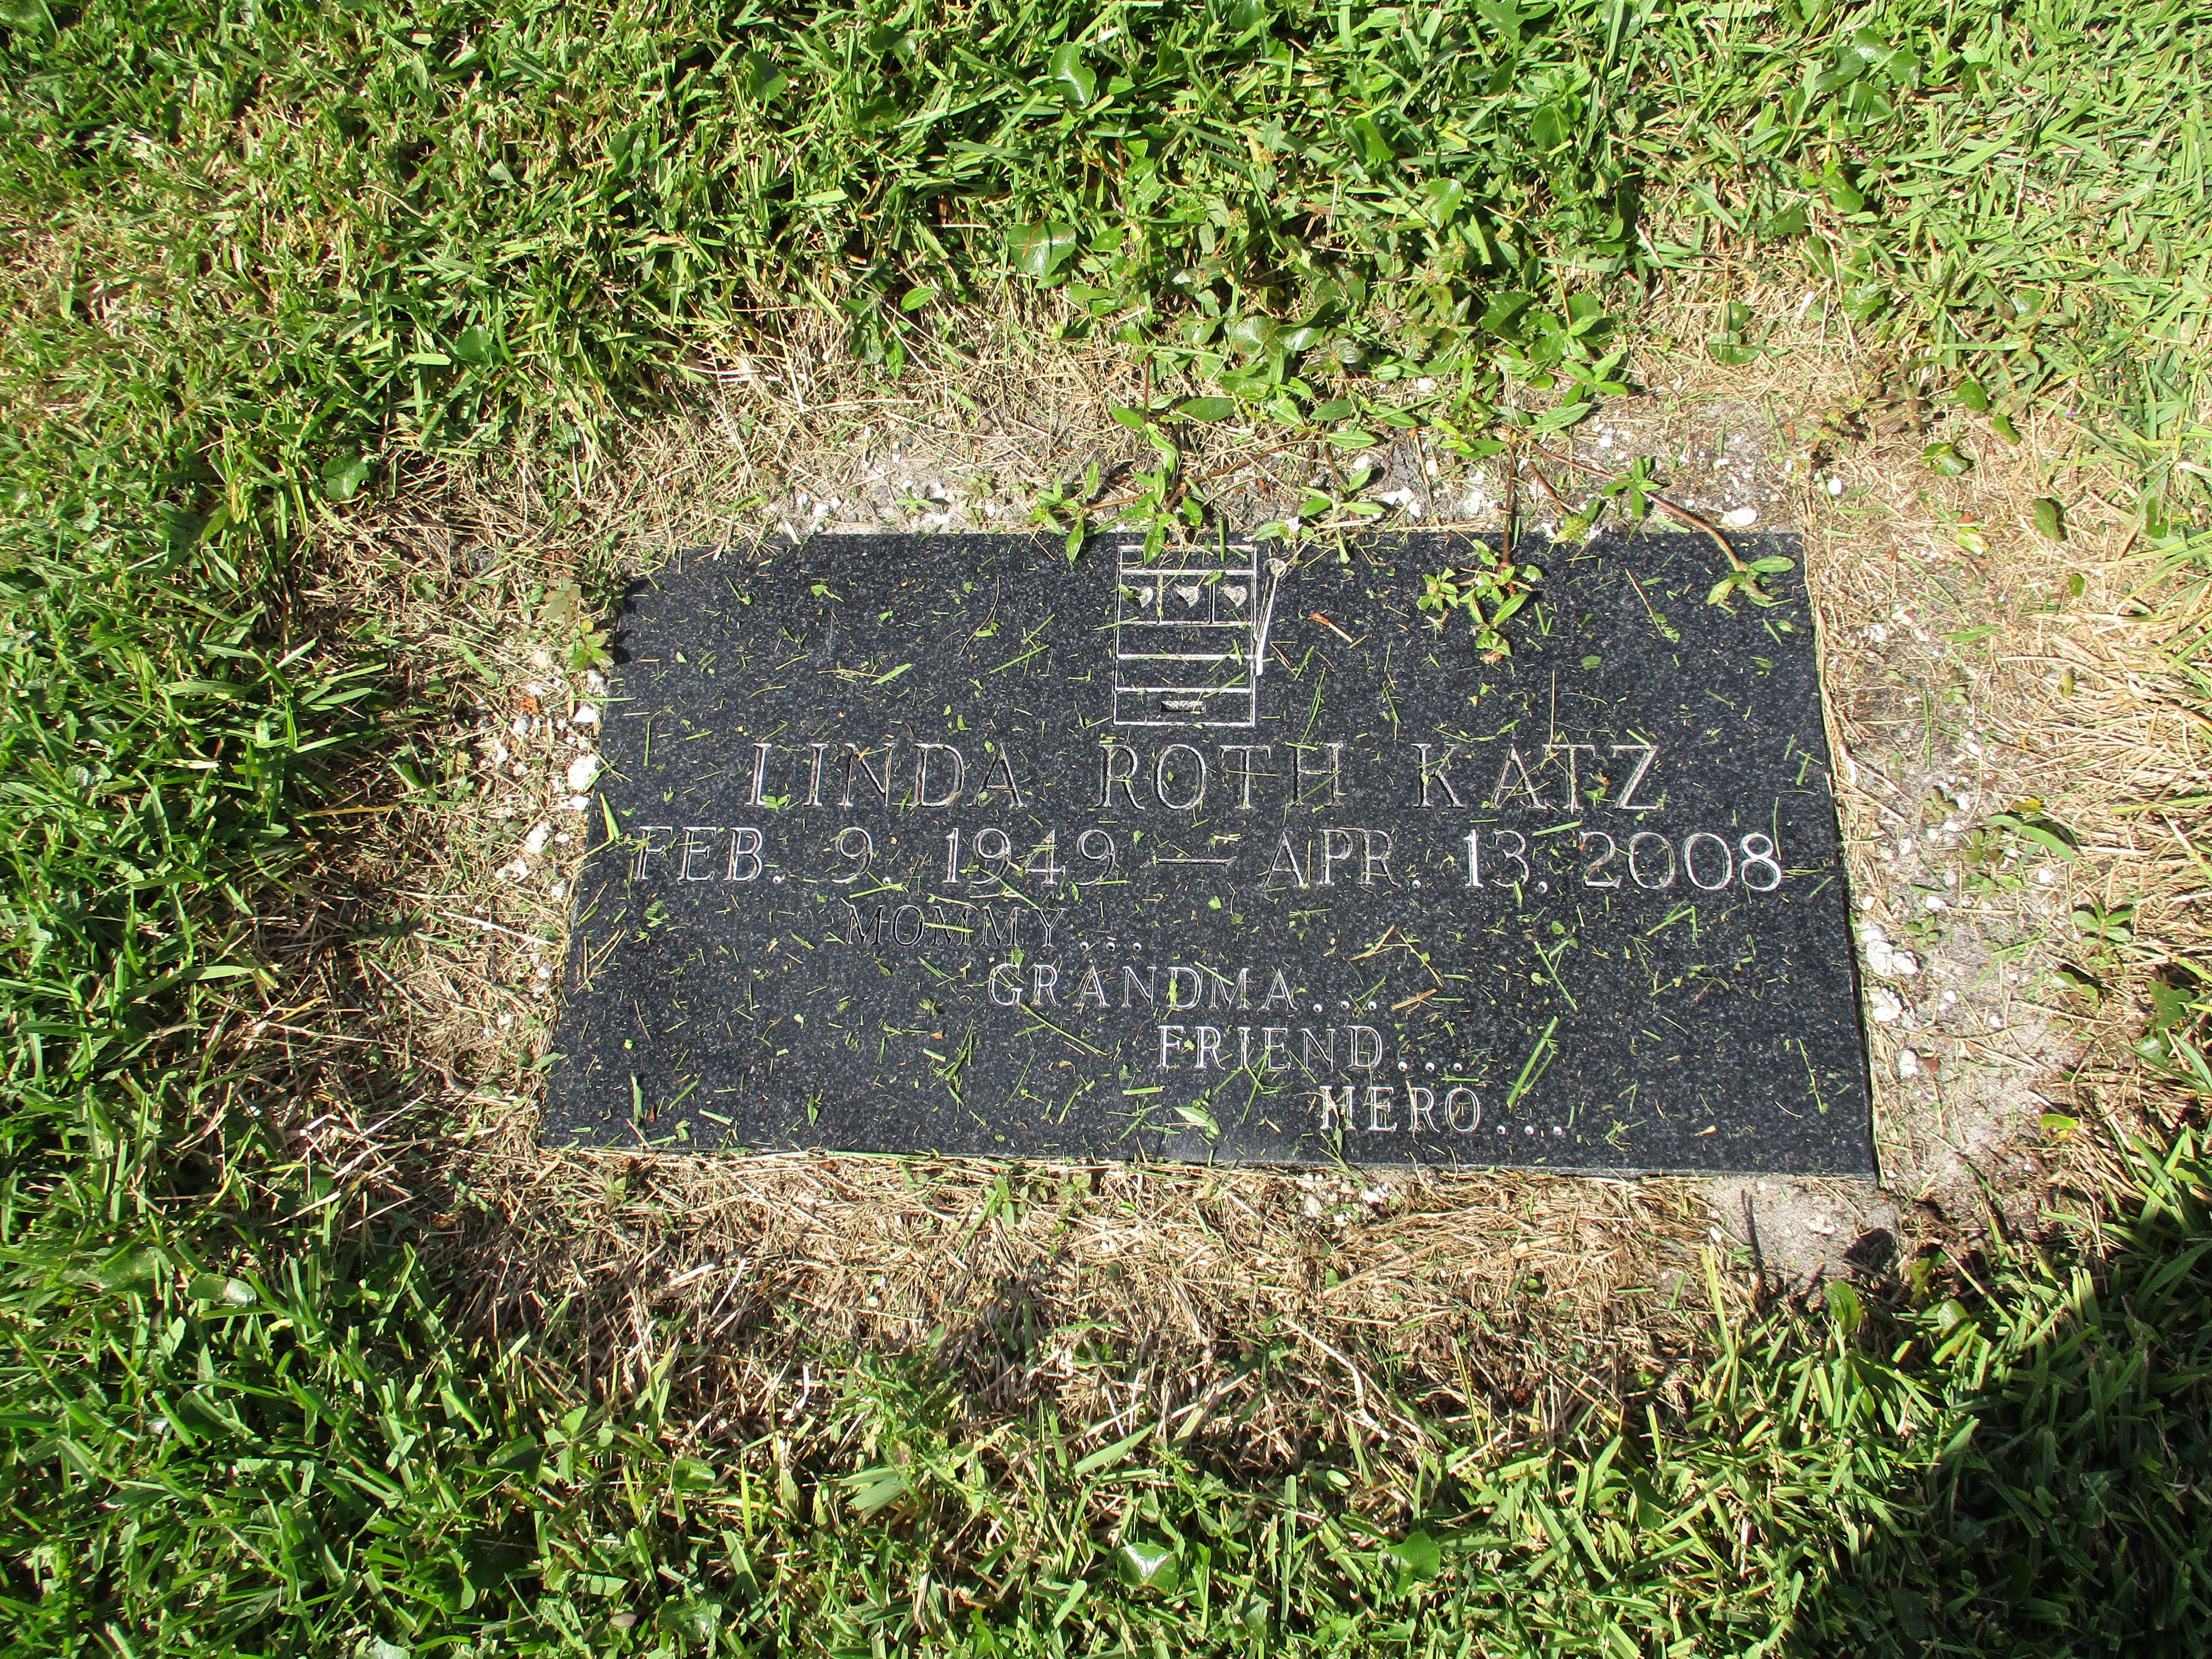 Linda Roth Katz